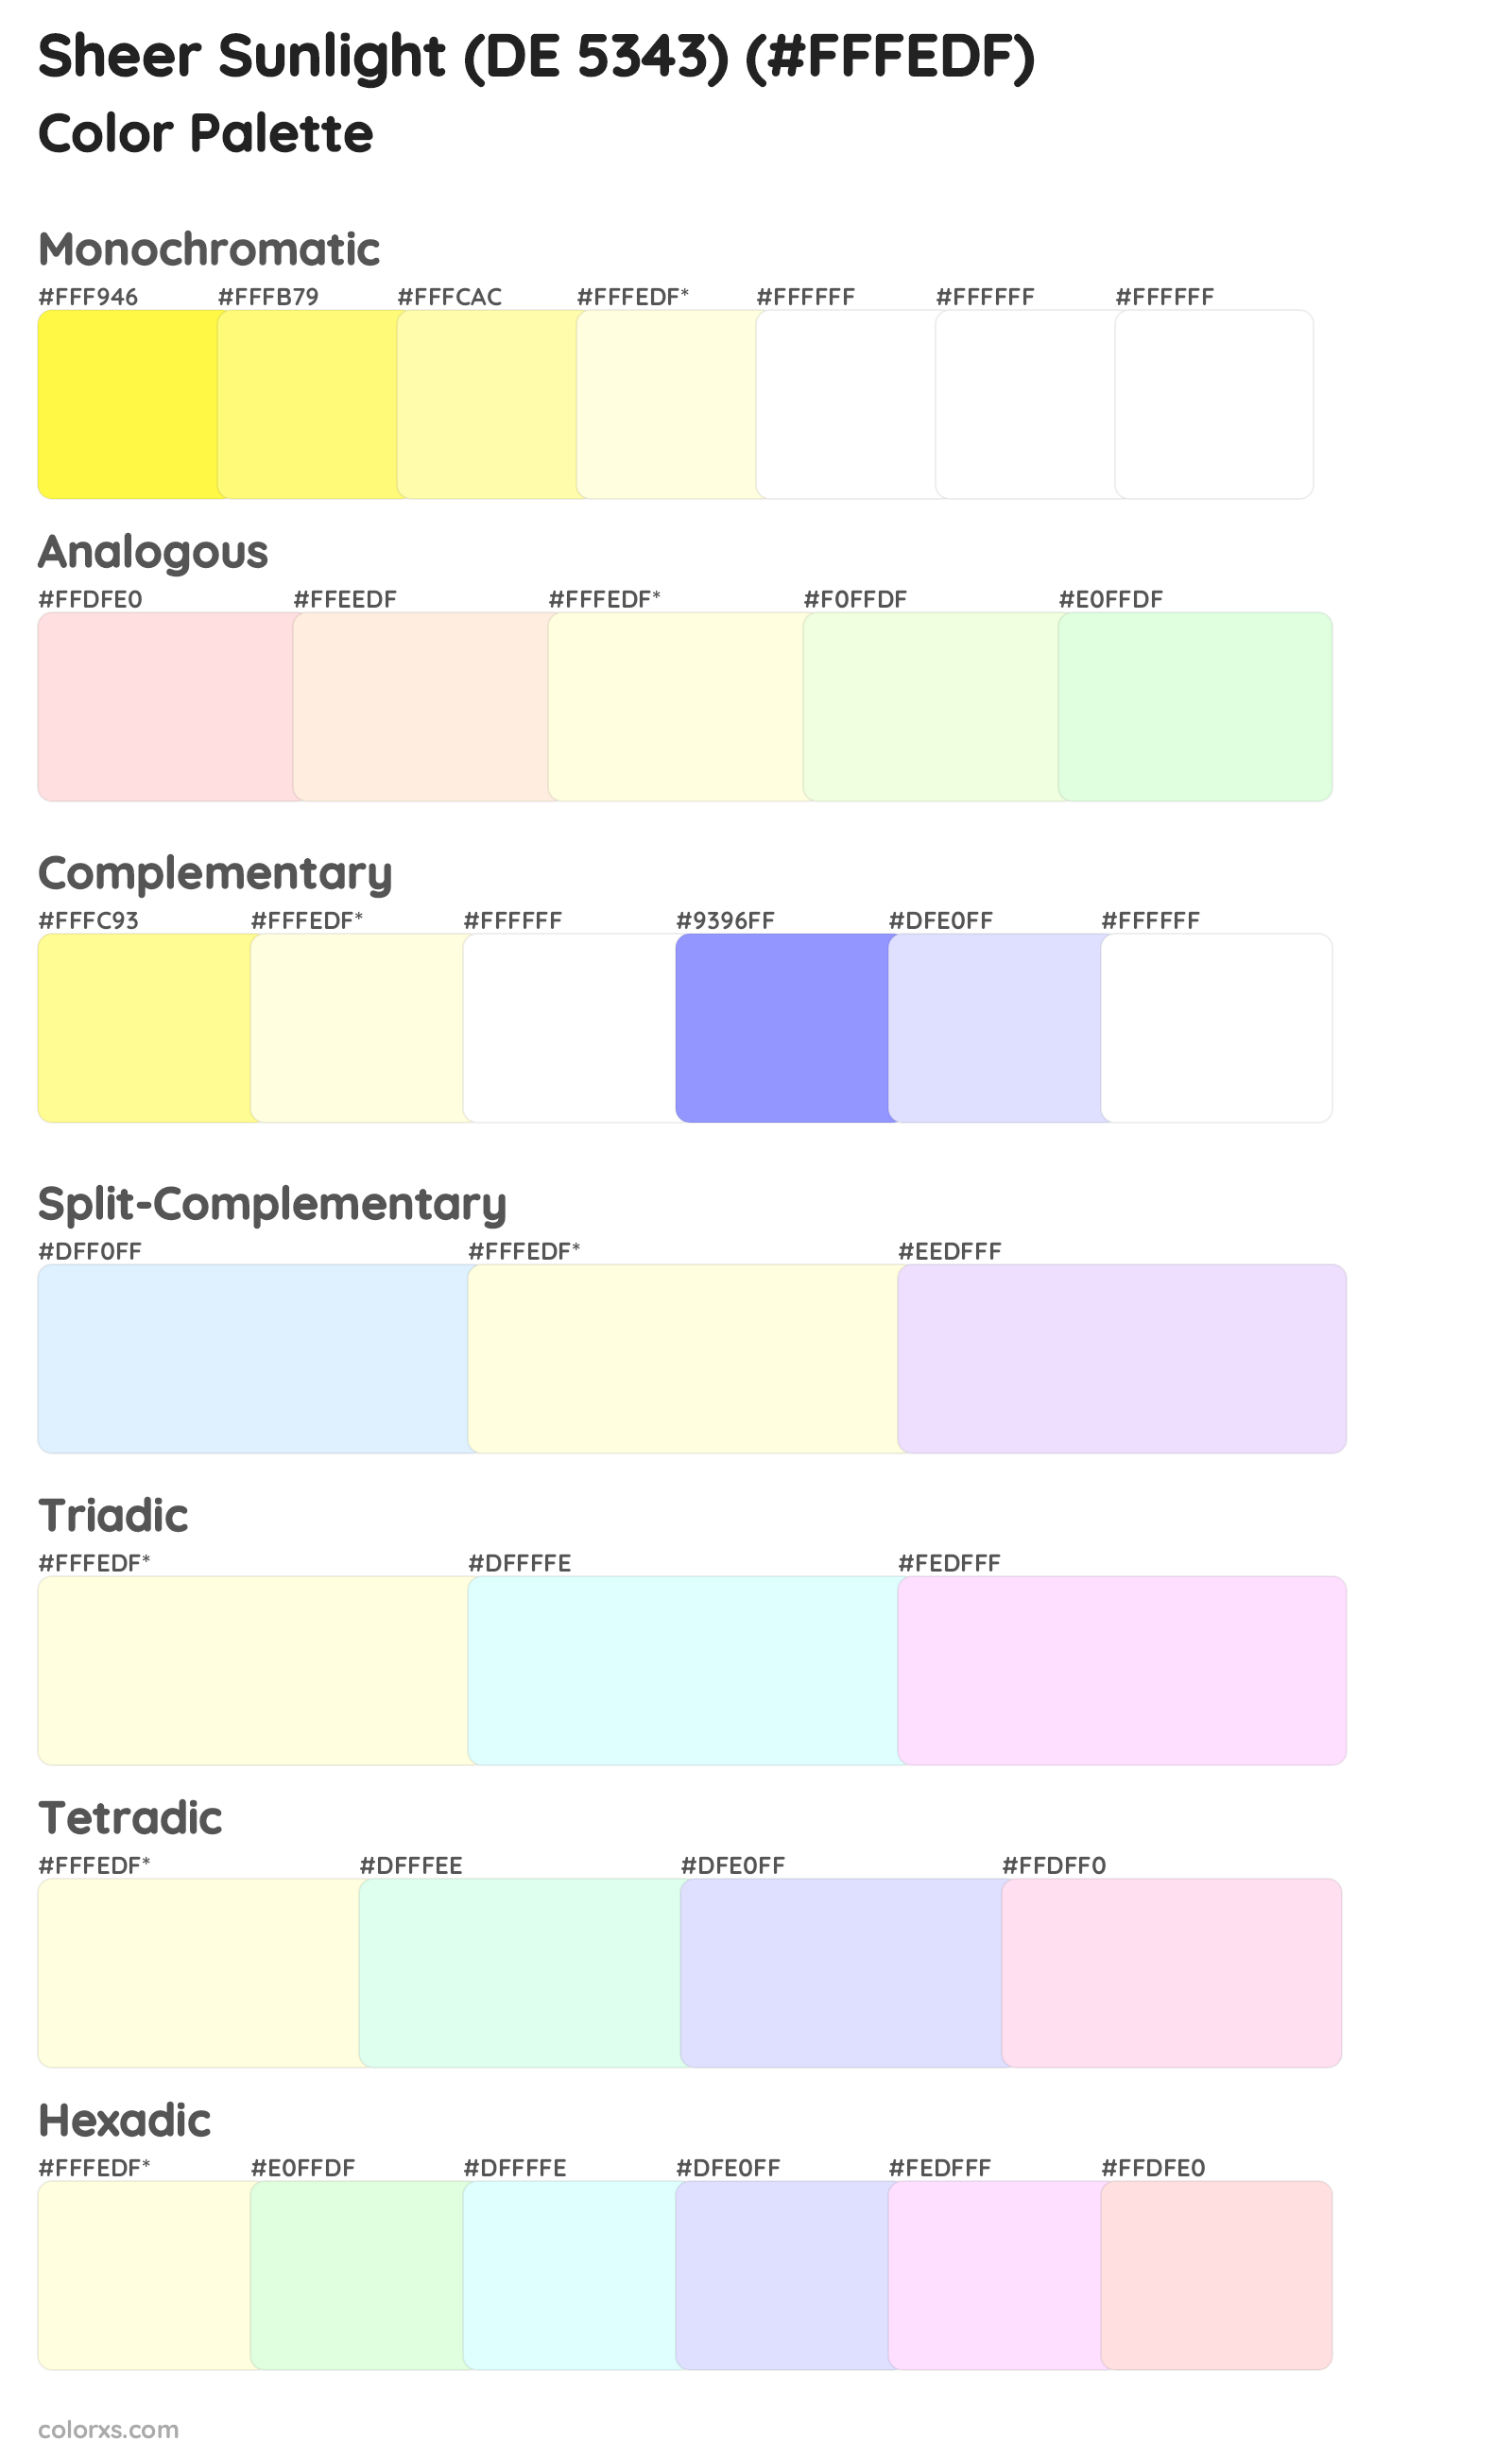 Sheer Sunlight (DE 5343) Color Scheme Palettes